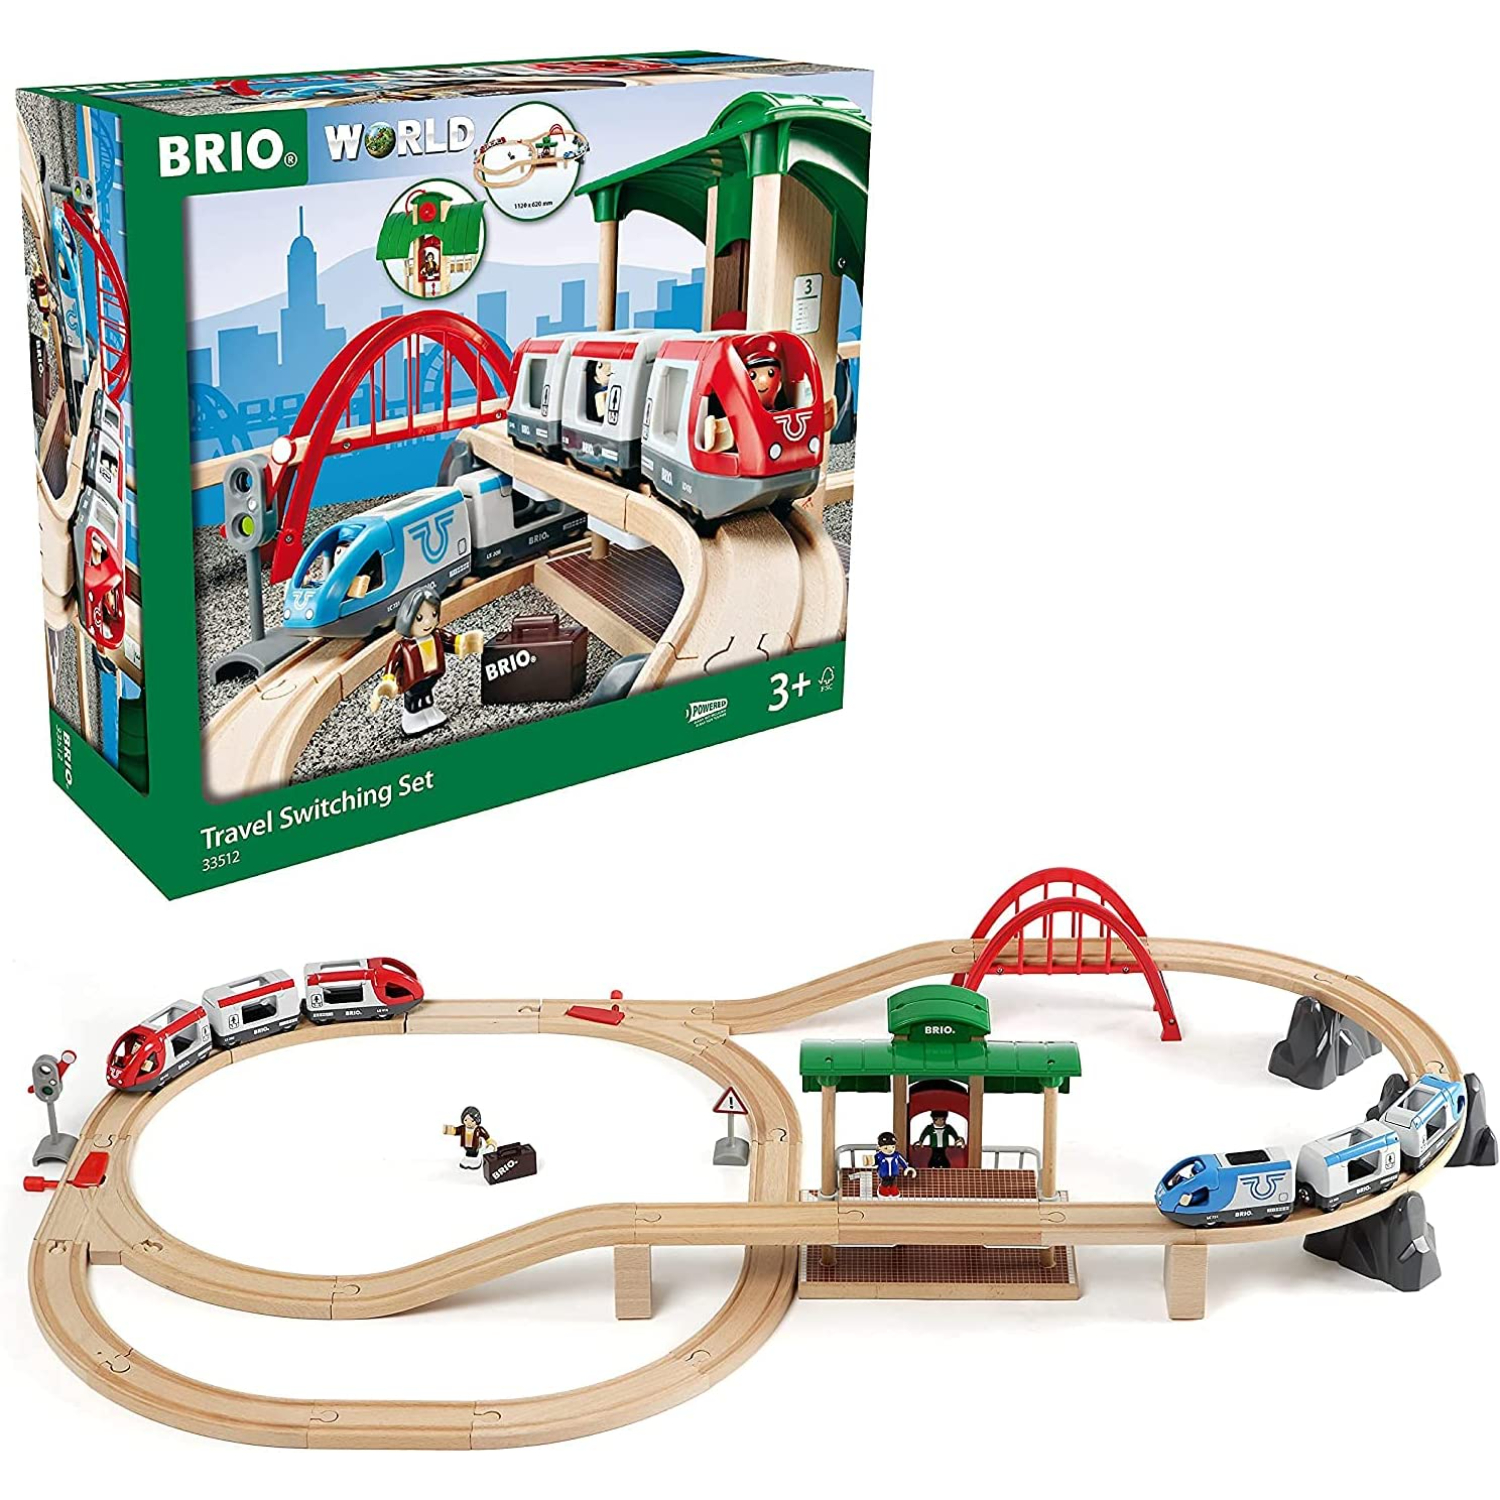 BRIO ブリオ WORLD トラベルレールセット 全42ピース 対象年齢 3歳~ 電動車両 電車 おもちゃ 木製 レール 正規輸入品 |  シヤチハタオフィシャルショップ